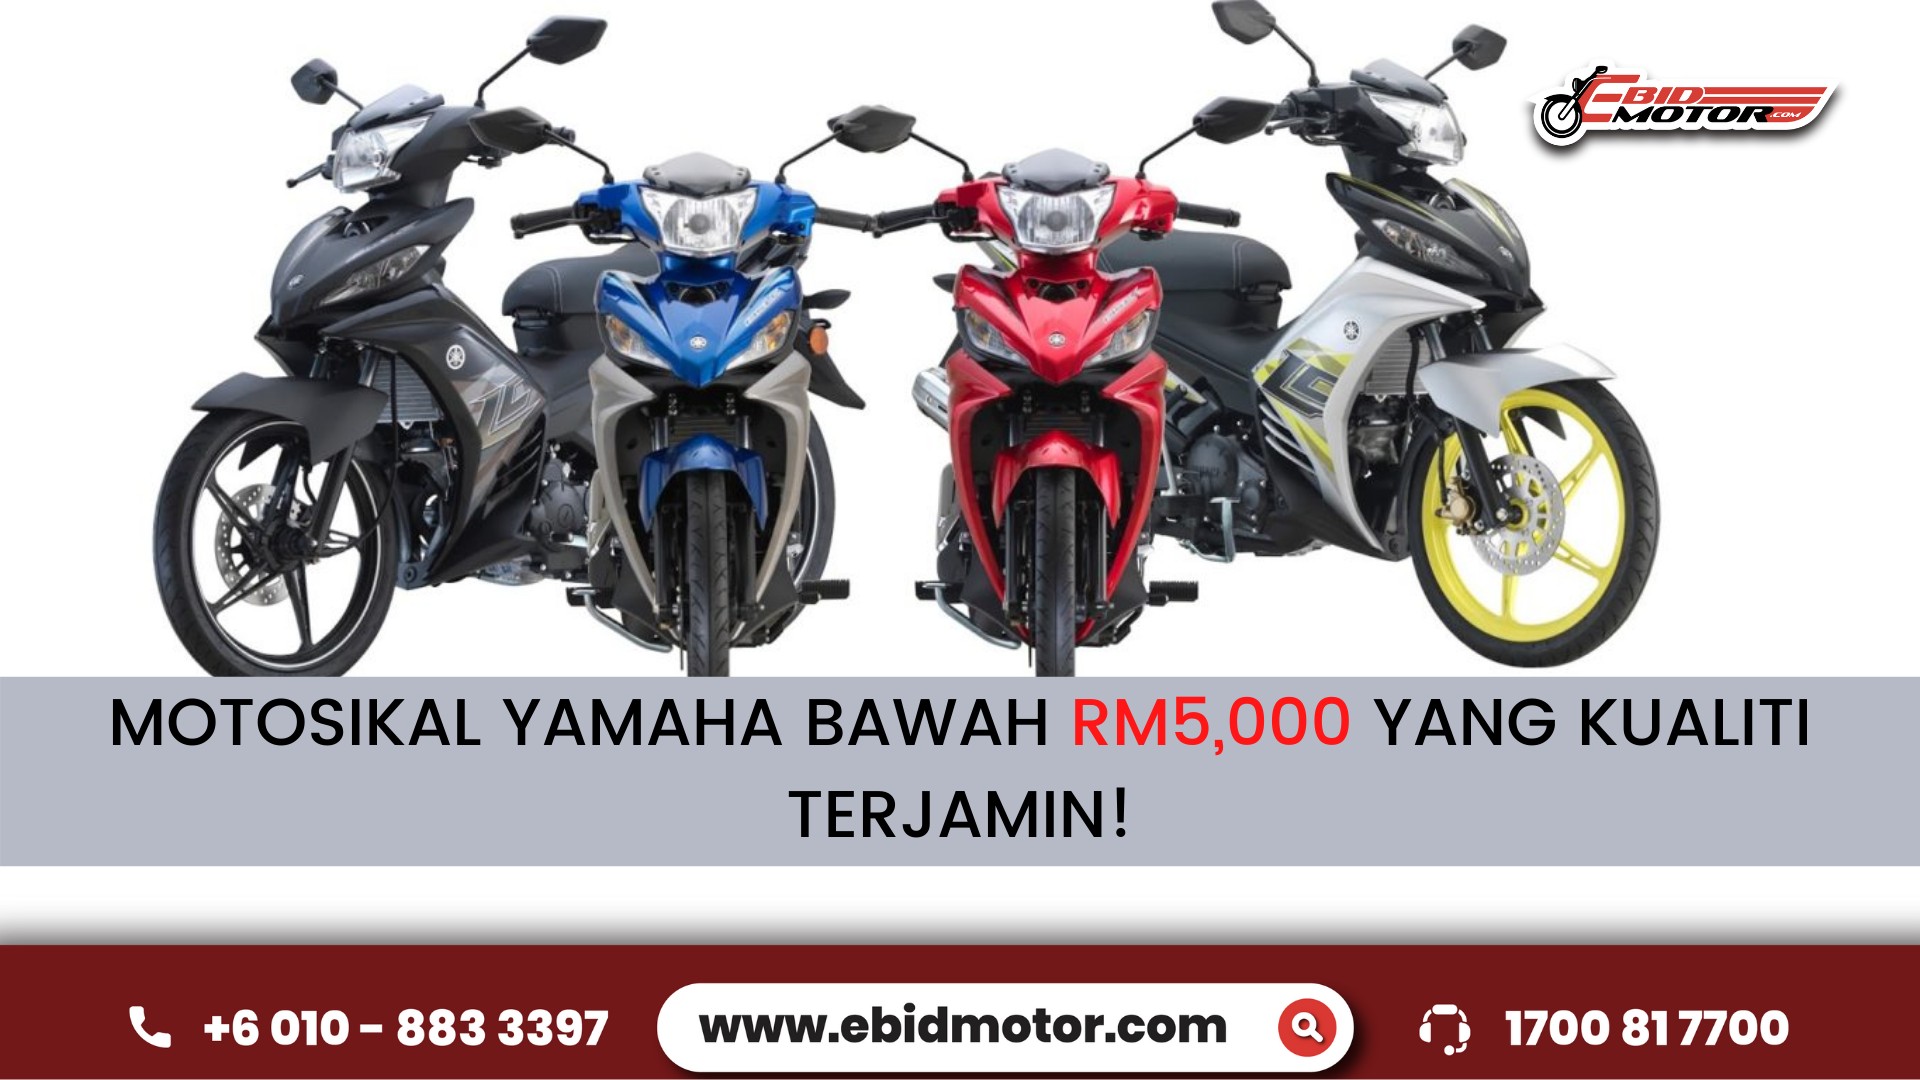 MOTOSIKAL YAMAHA BAWAH RM5,000 !